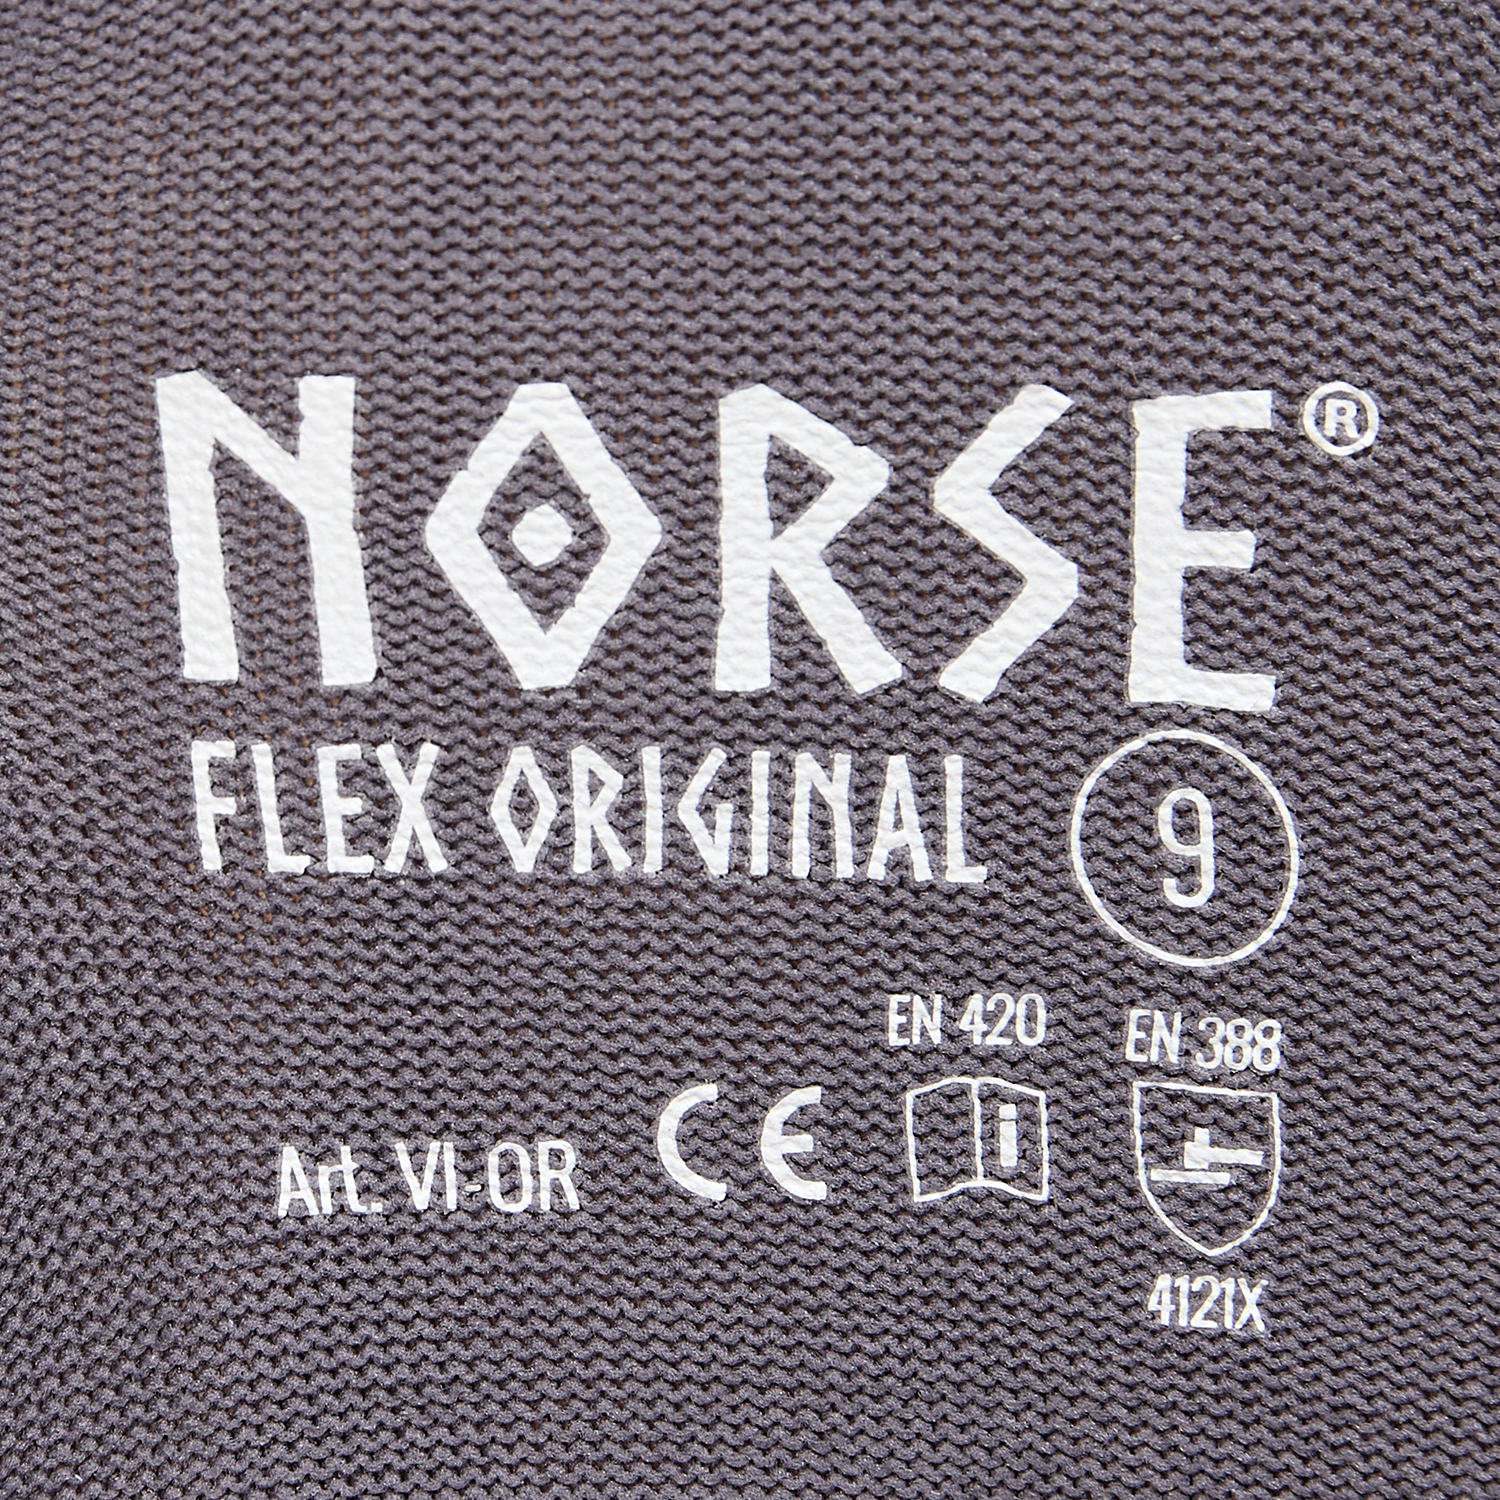 NORSE Flex Original Montagehandschuhe Größe 7